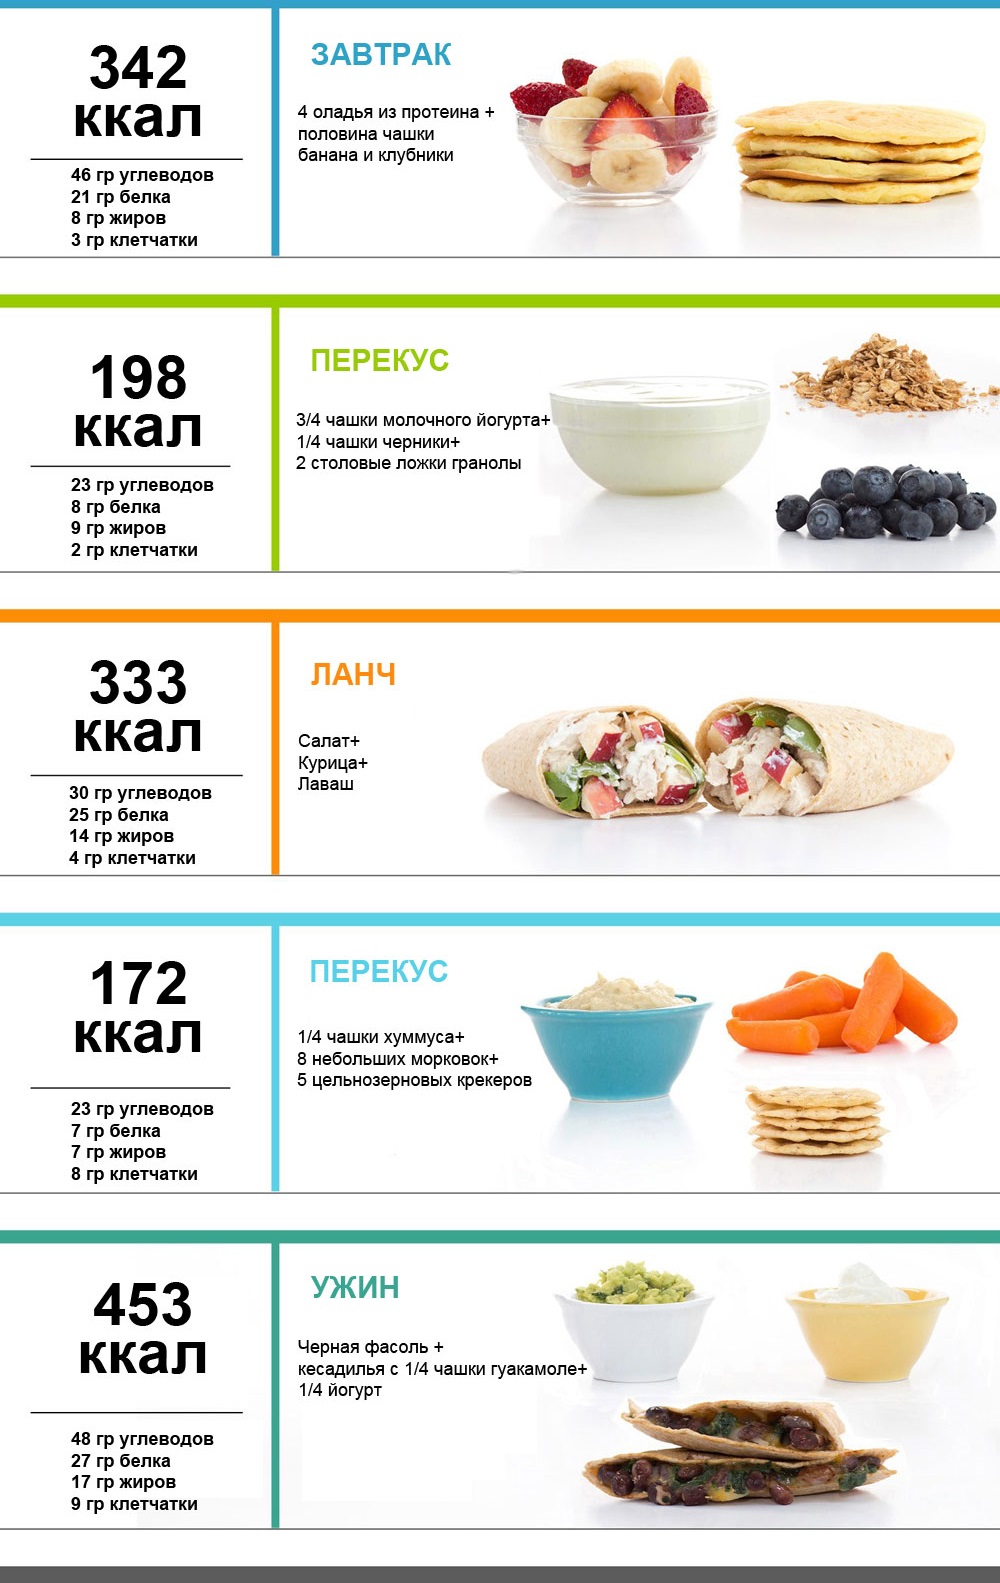 PP-menu voor een week om af te vallen. Tabel met recepten van eenvoudige producten, een geschat dieet voor 1000, 1200, 1500 calorieën per dag